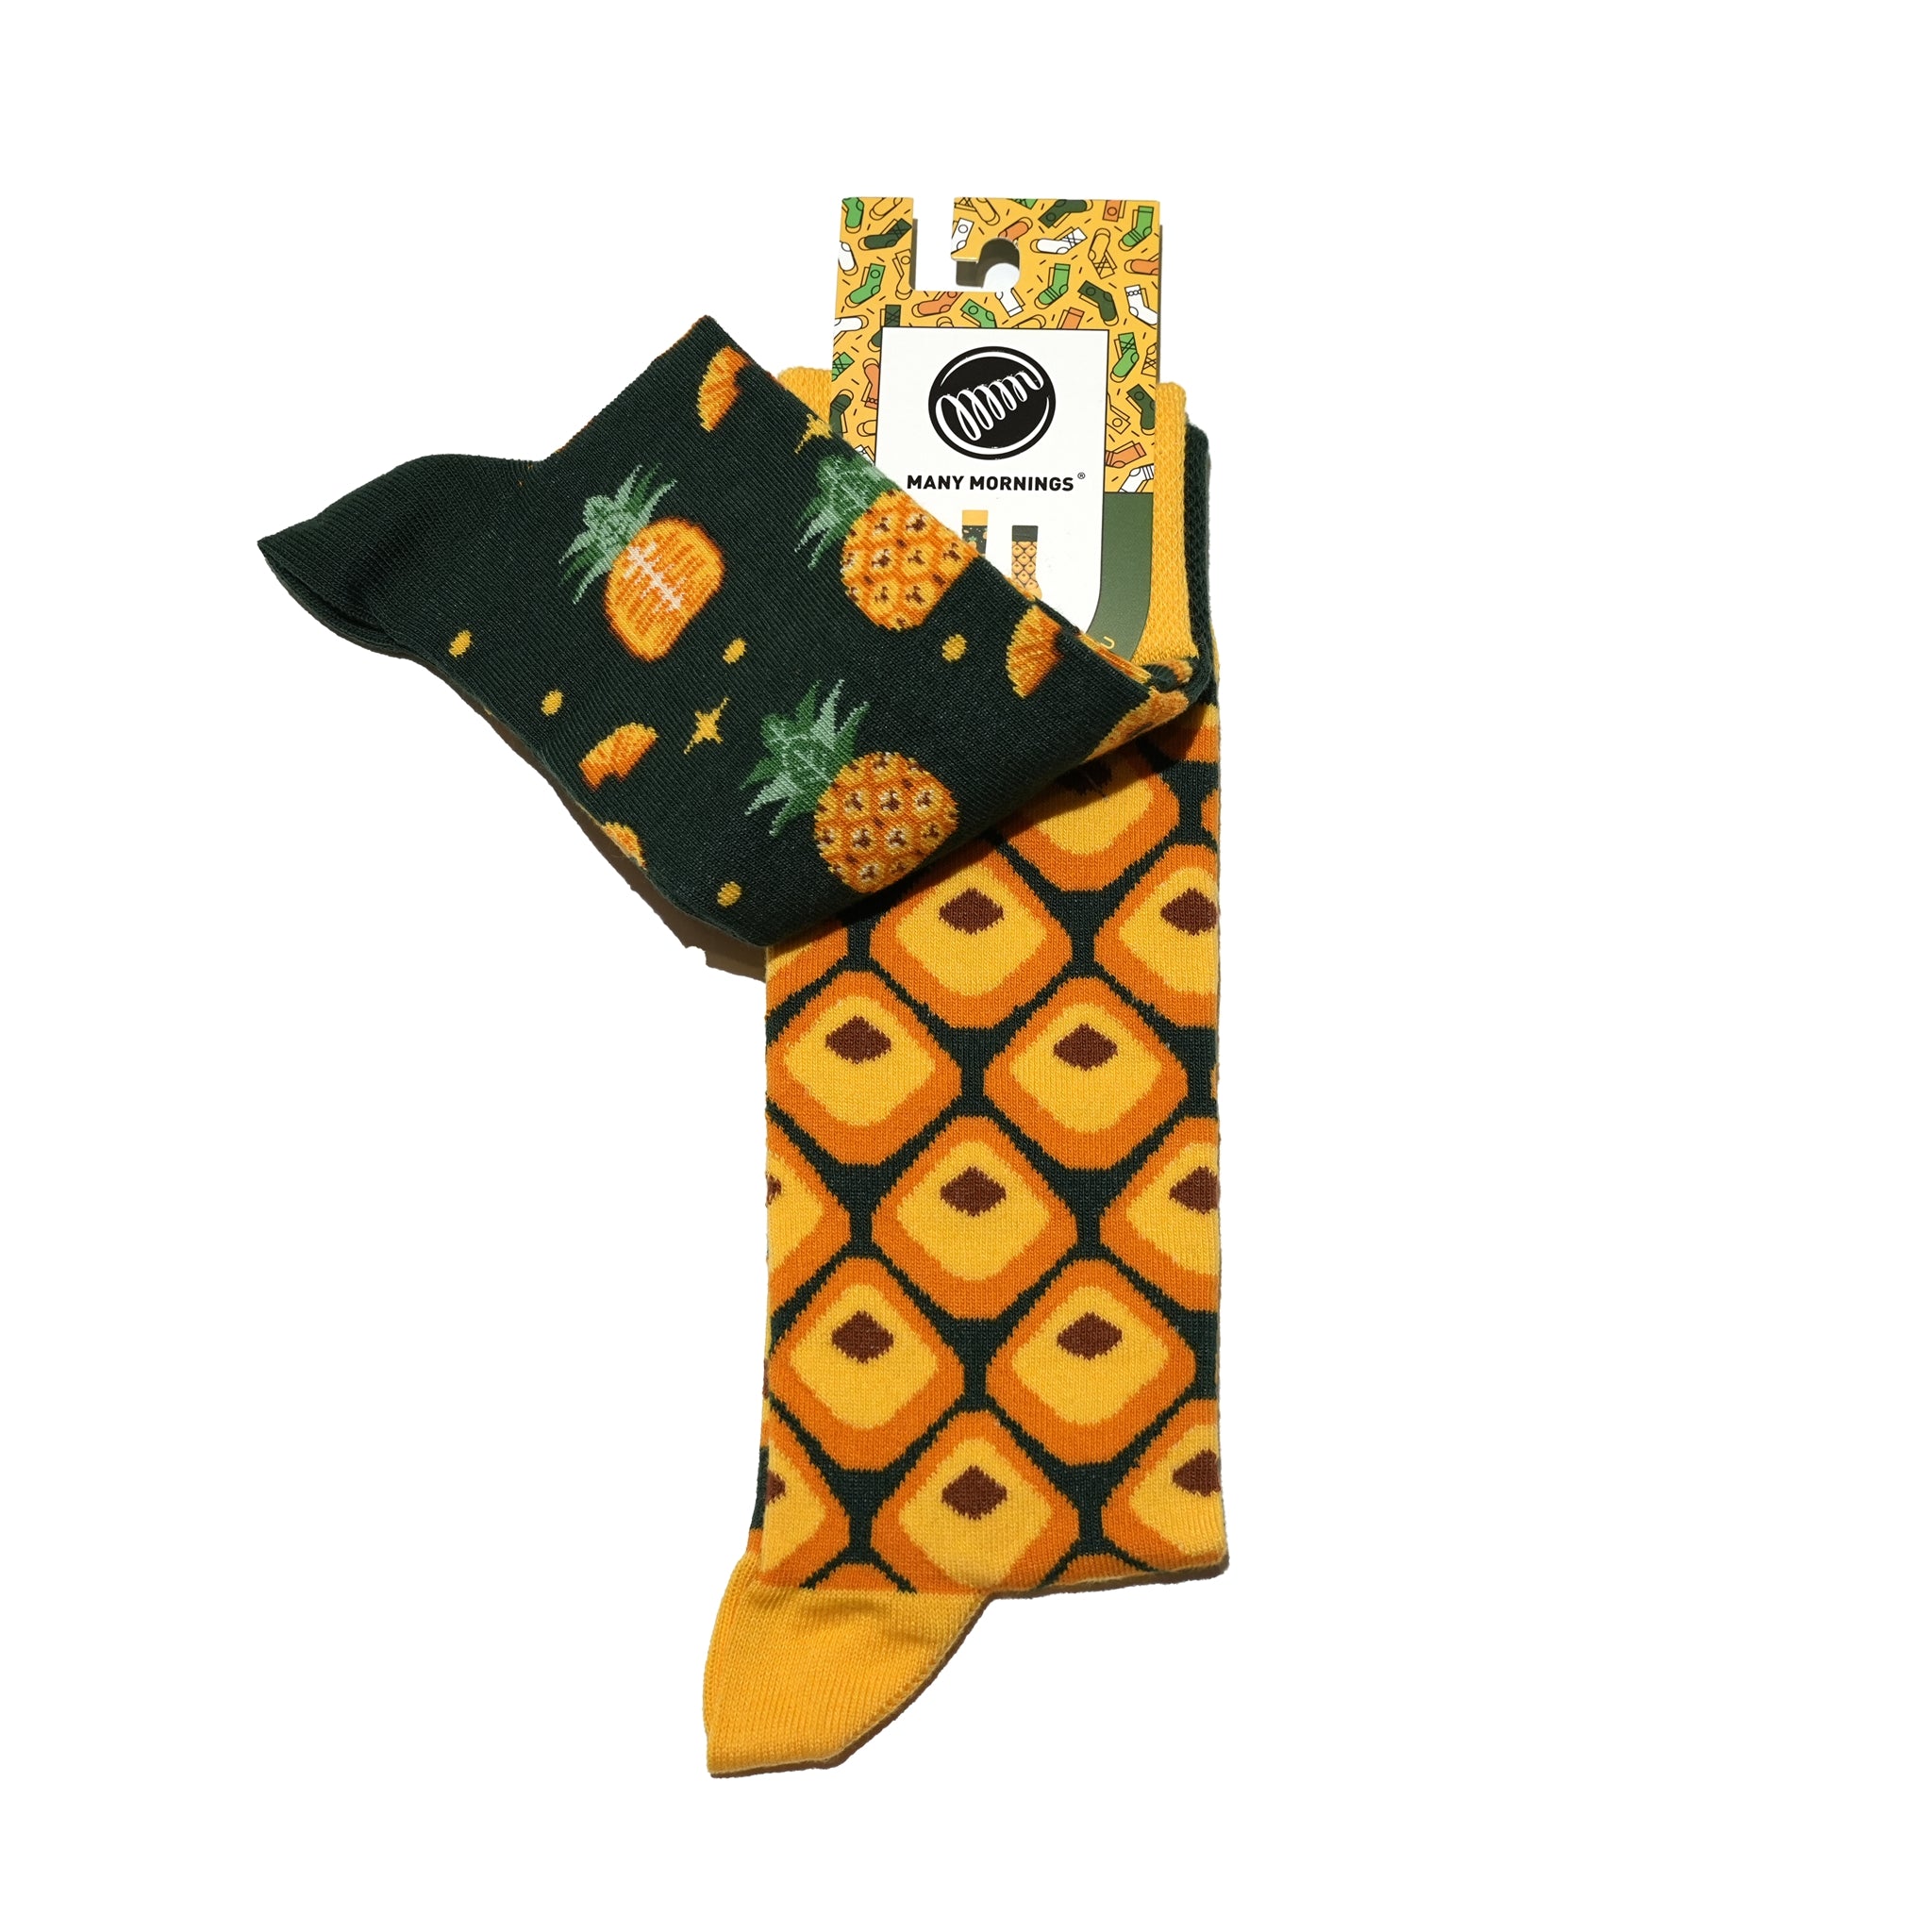 many mornings reguler socks / The Pineapple 【many mornings メニ―モーニングス】【ネコポス選択可能】